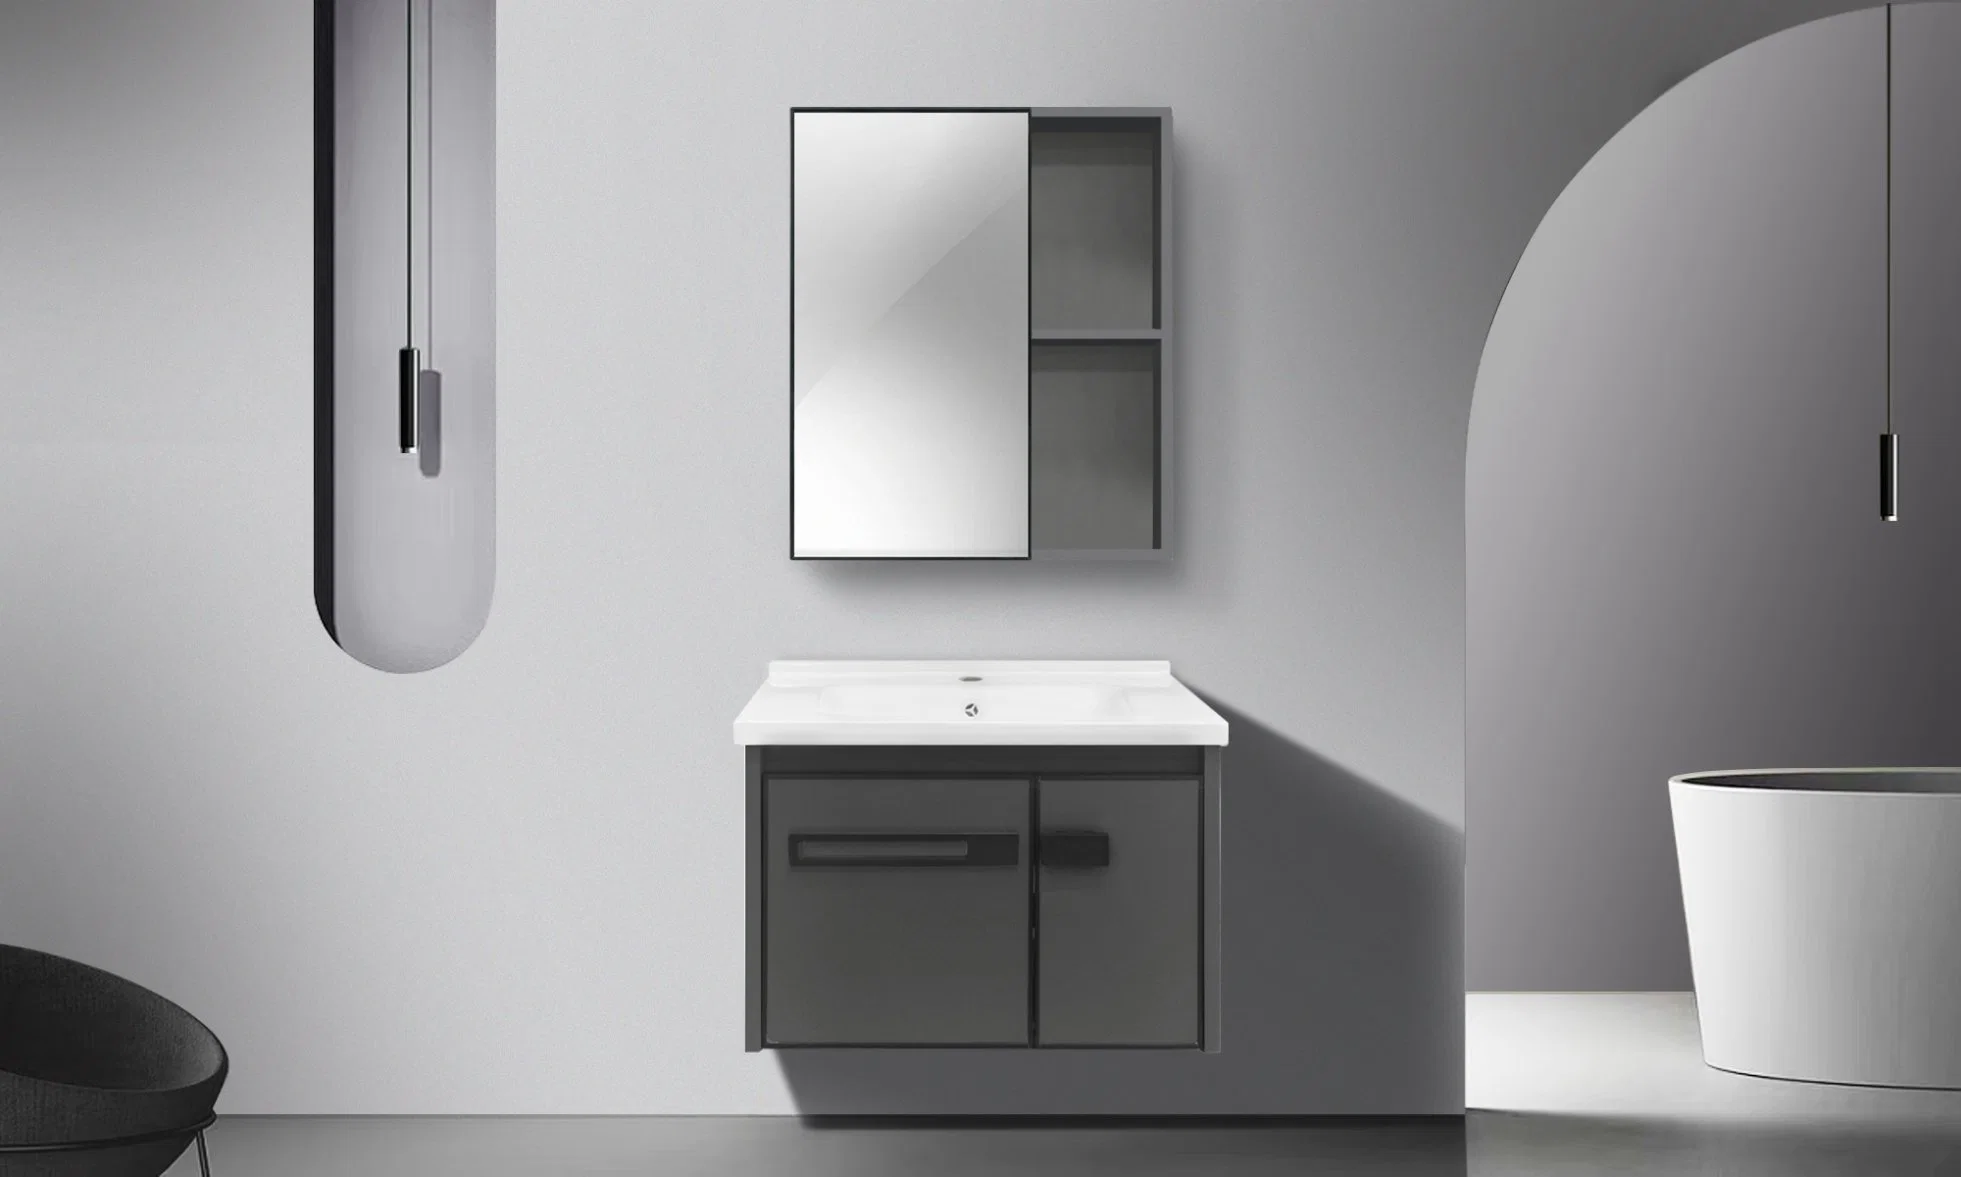 Aluminium-Legierung Dekorative Matte Black Wand Wasserdichte Badezimmer Eitelkeit Montiert Spiegelschrank mit Waschbecken